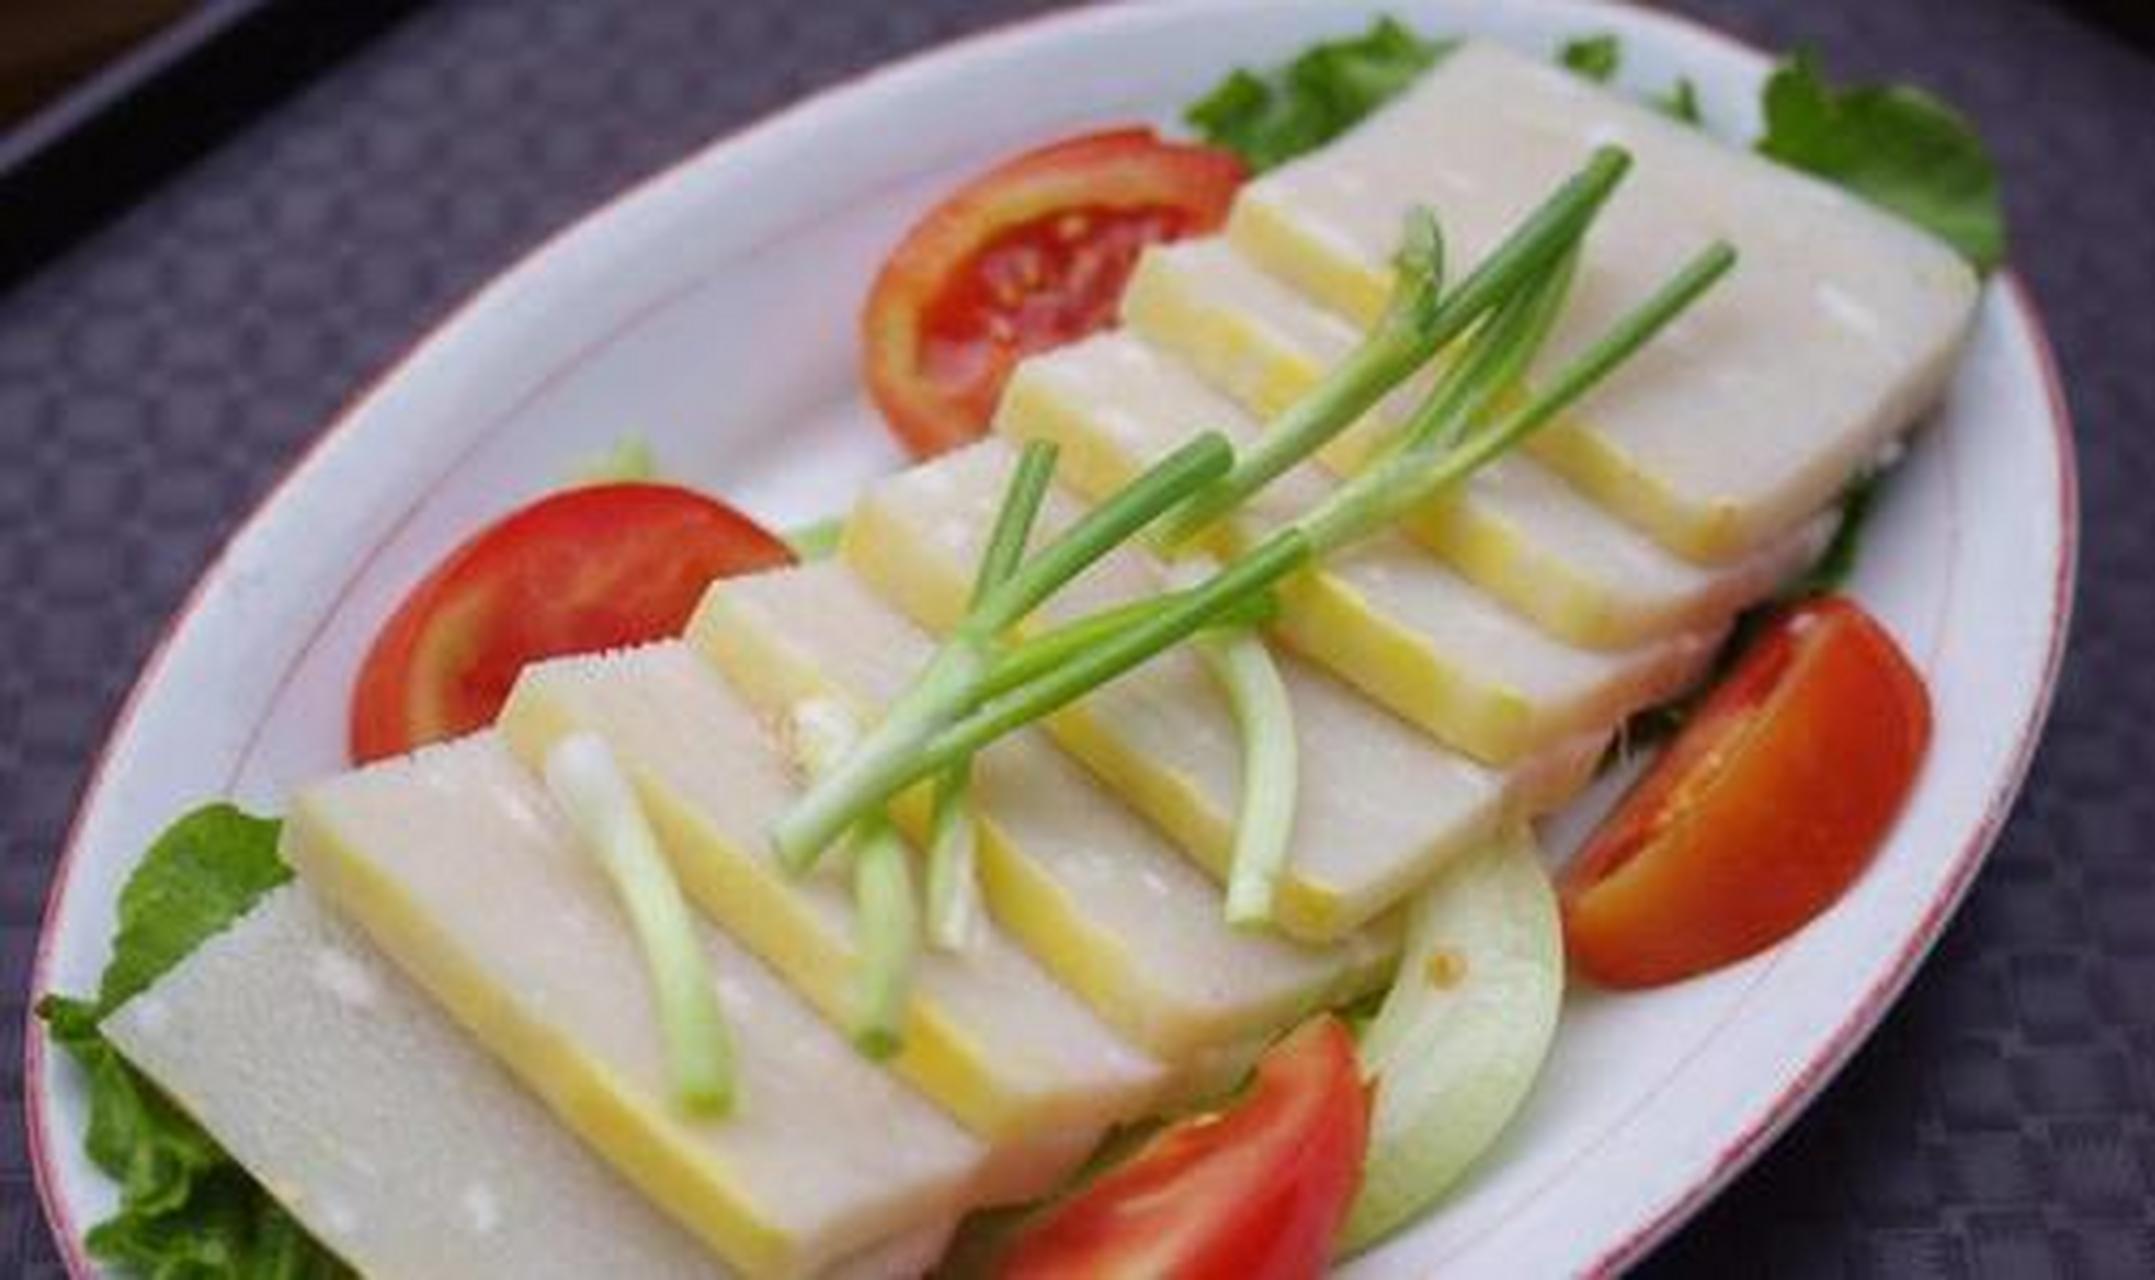 长湖鱼糕是一道湖北荆门的汉族风味名吃,以长湖白鱼为主料,掺合淀粉